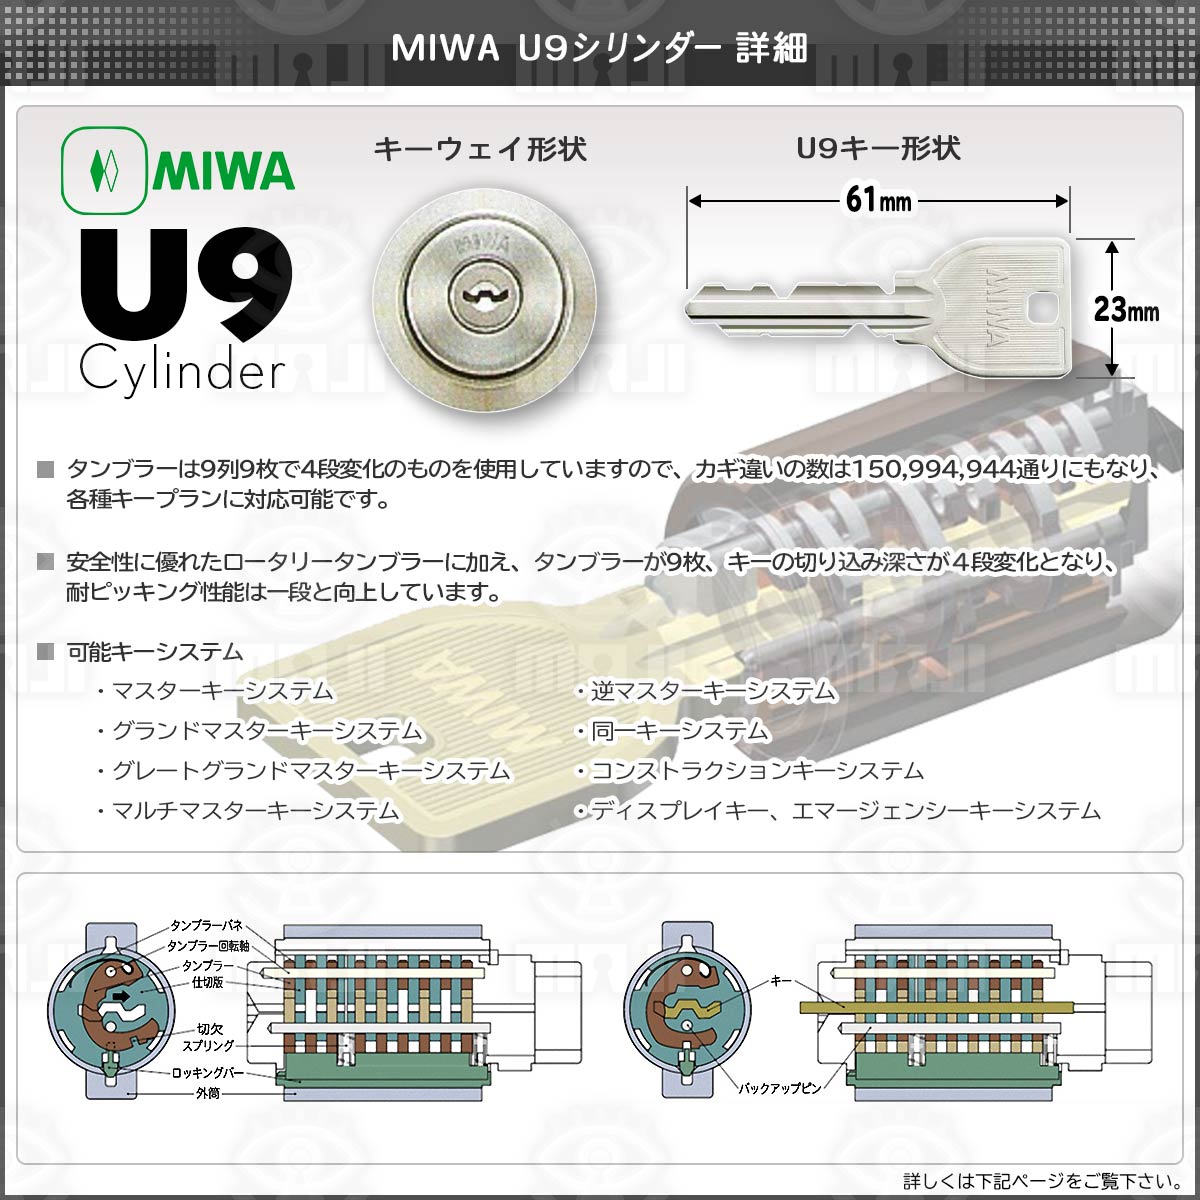 MIWA,美和ロック U9AL4M3N-1 本締り電気モーター錠 松下電工向け